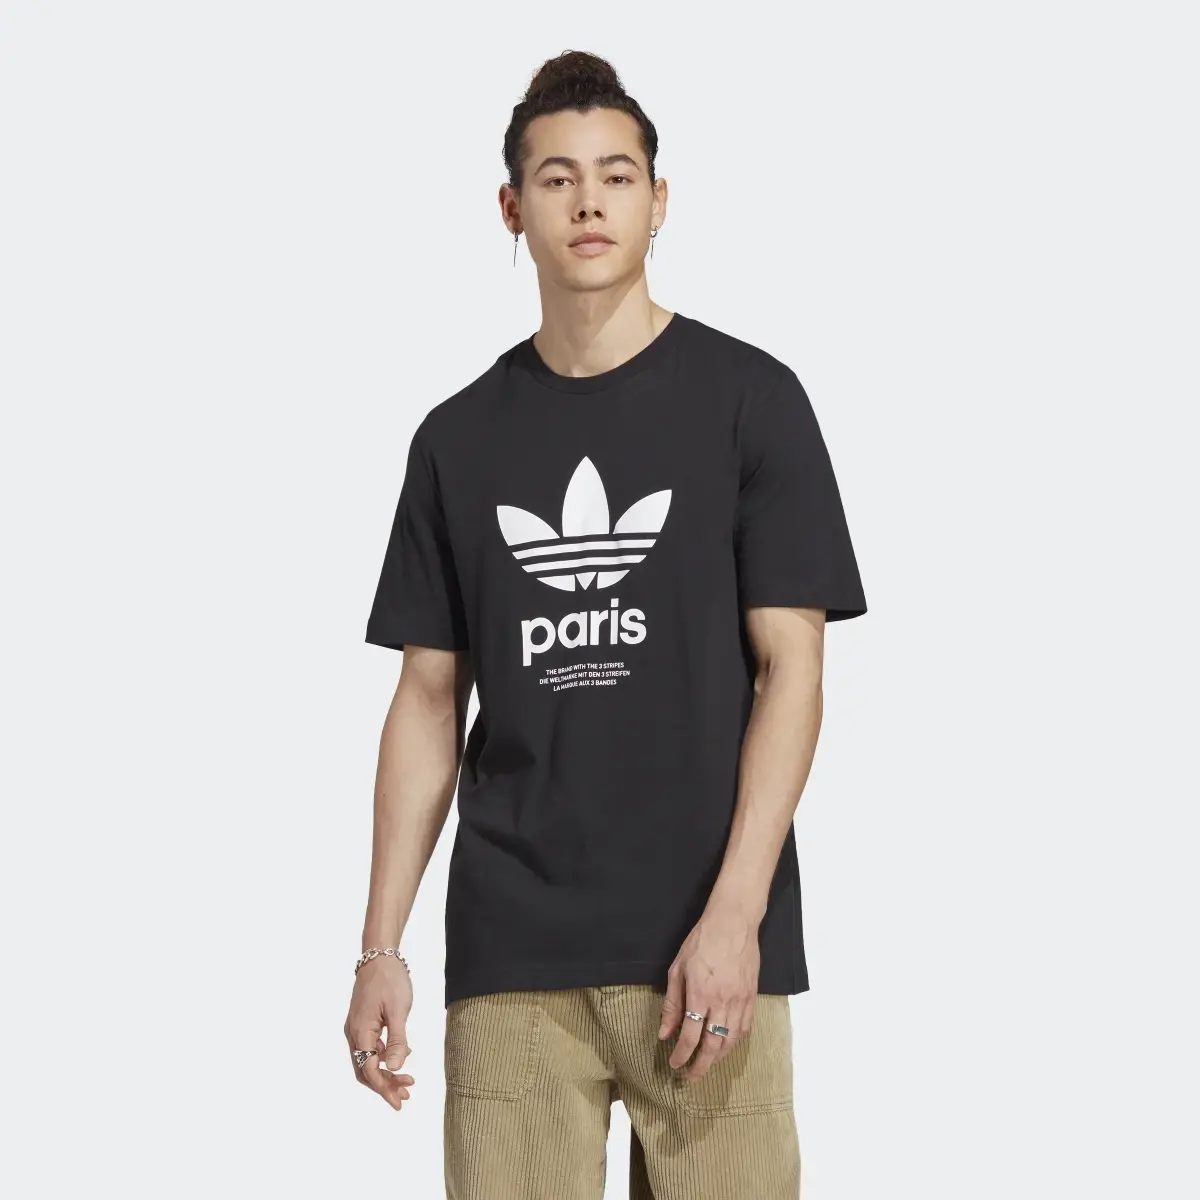 Adidas T-shirt Icone Paris City Originals. 2